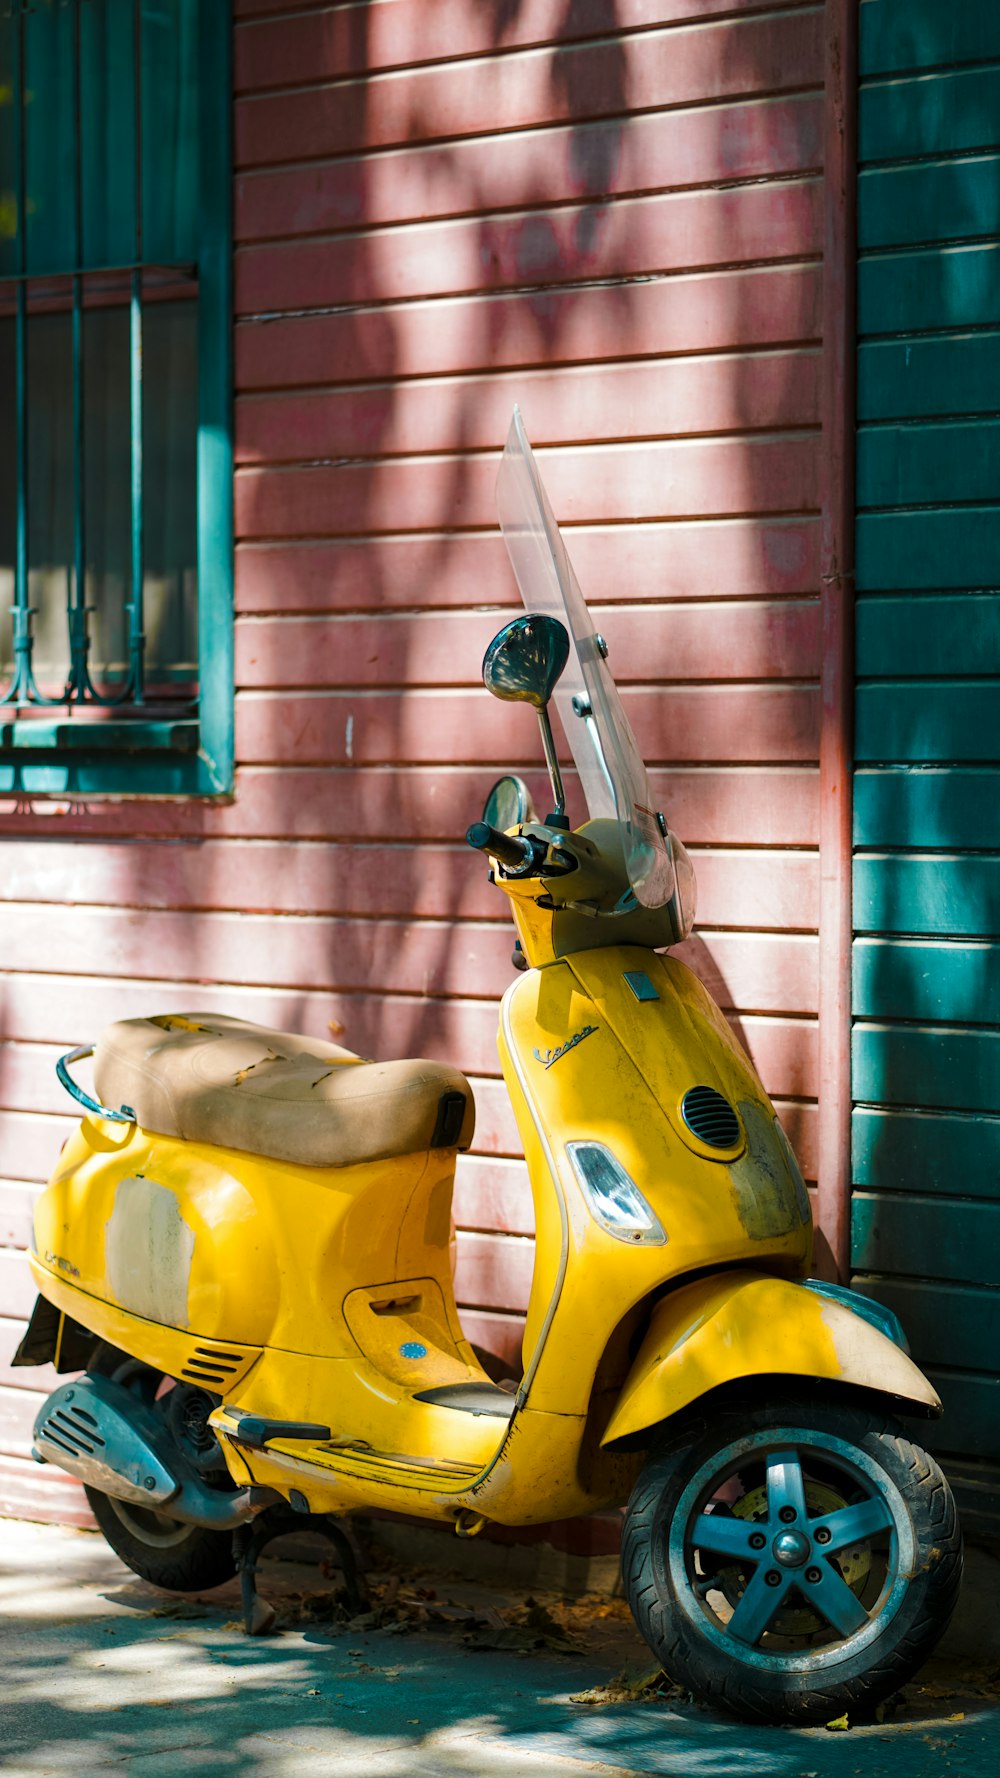 Un scooter jaune garé devant un immeuble